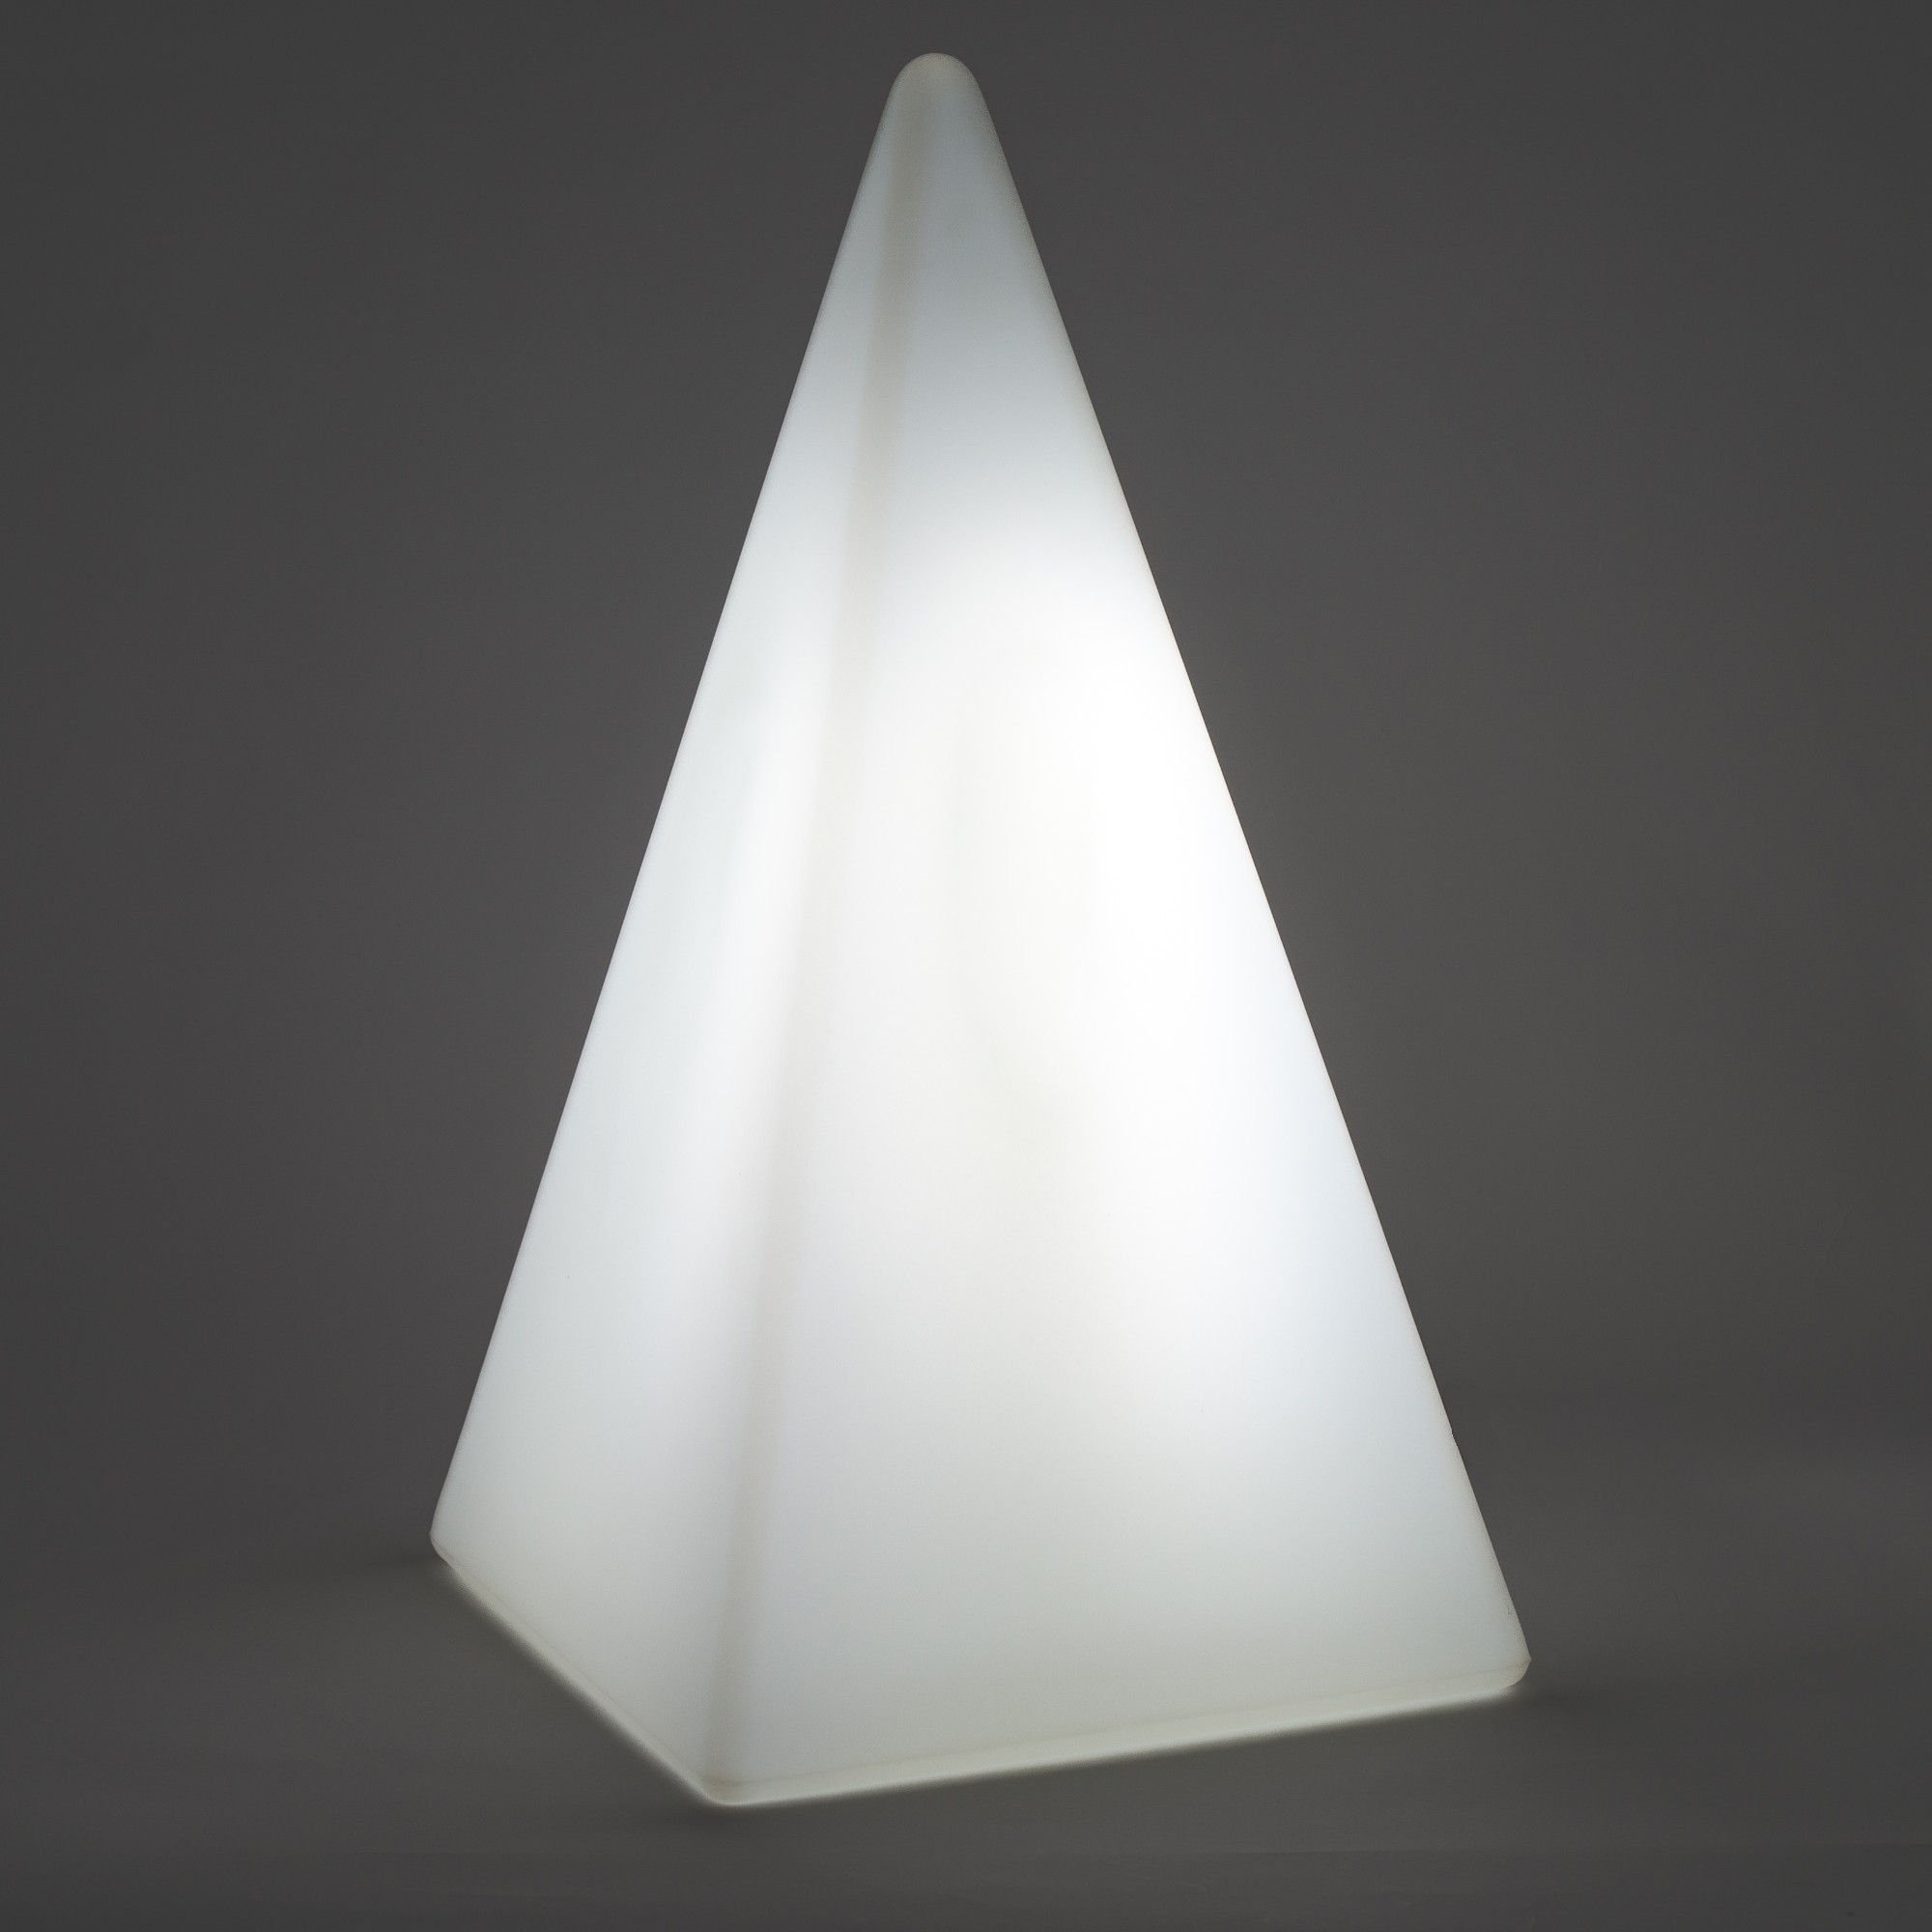 70874 Standleuchte Pyramide 73 cm der Firma EPSTEIN Design Leuchten